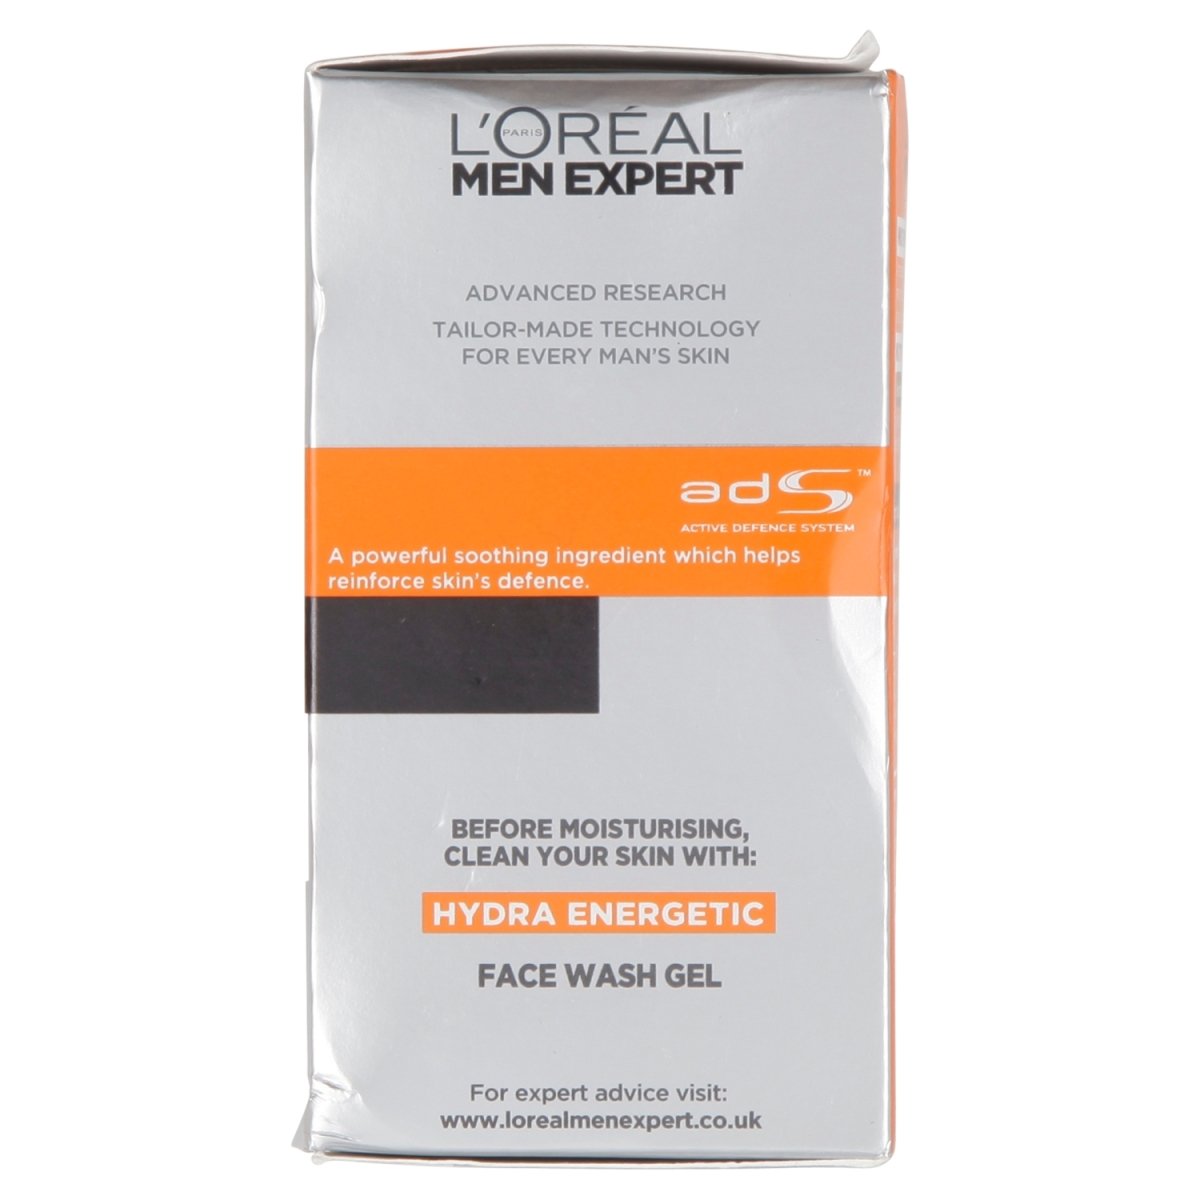 L'Oreal Men Expert Hydra Energetic Moisturiser - Intamarque 3600520297262